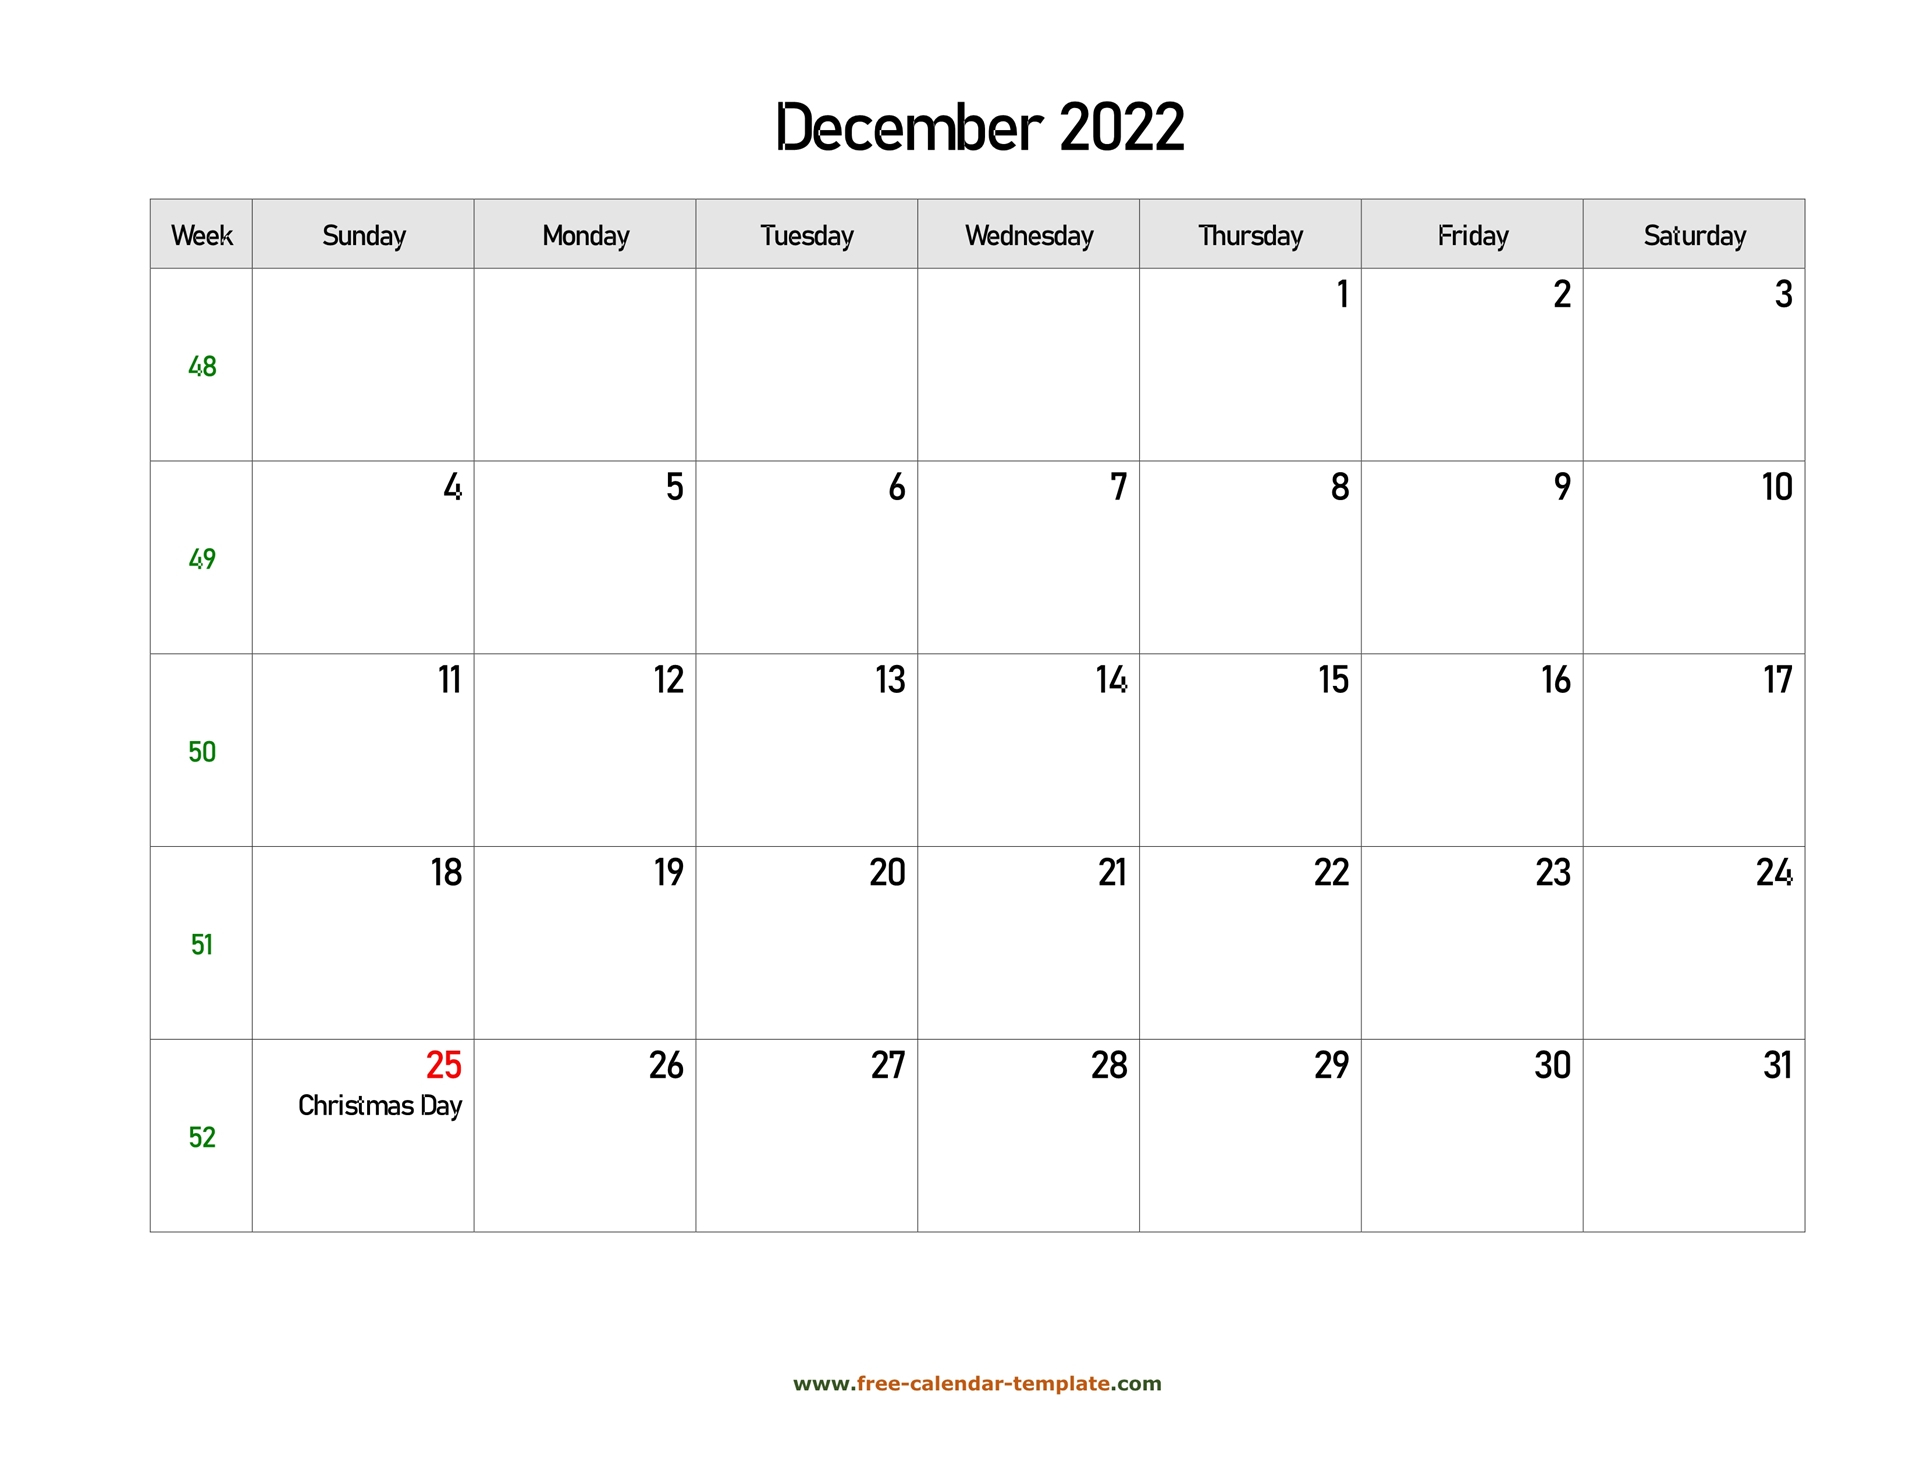 Take Calendar February 22 2022